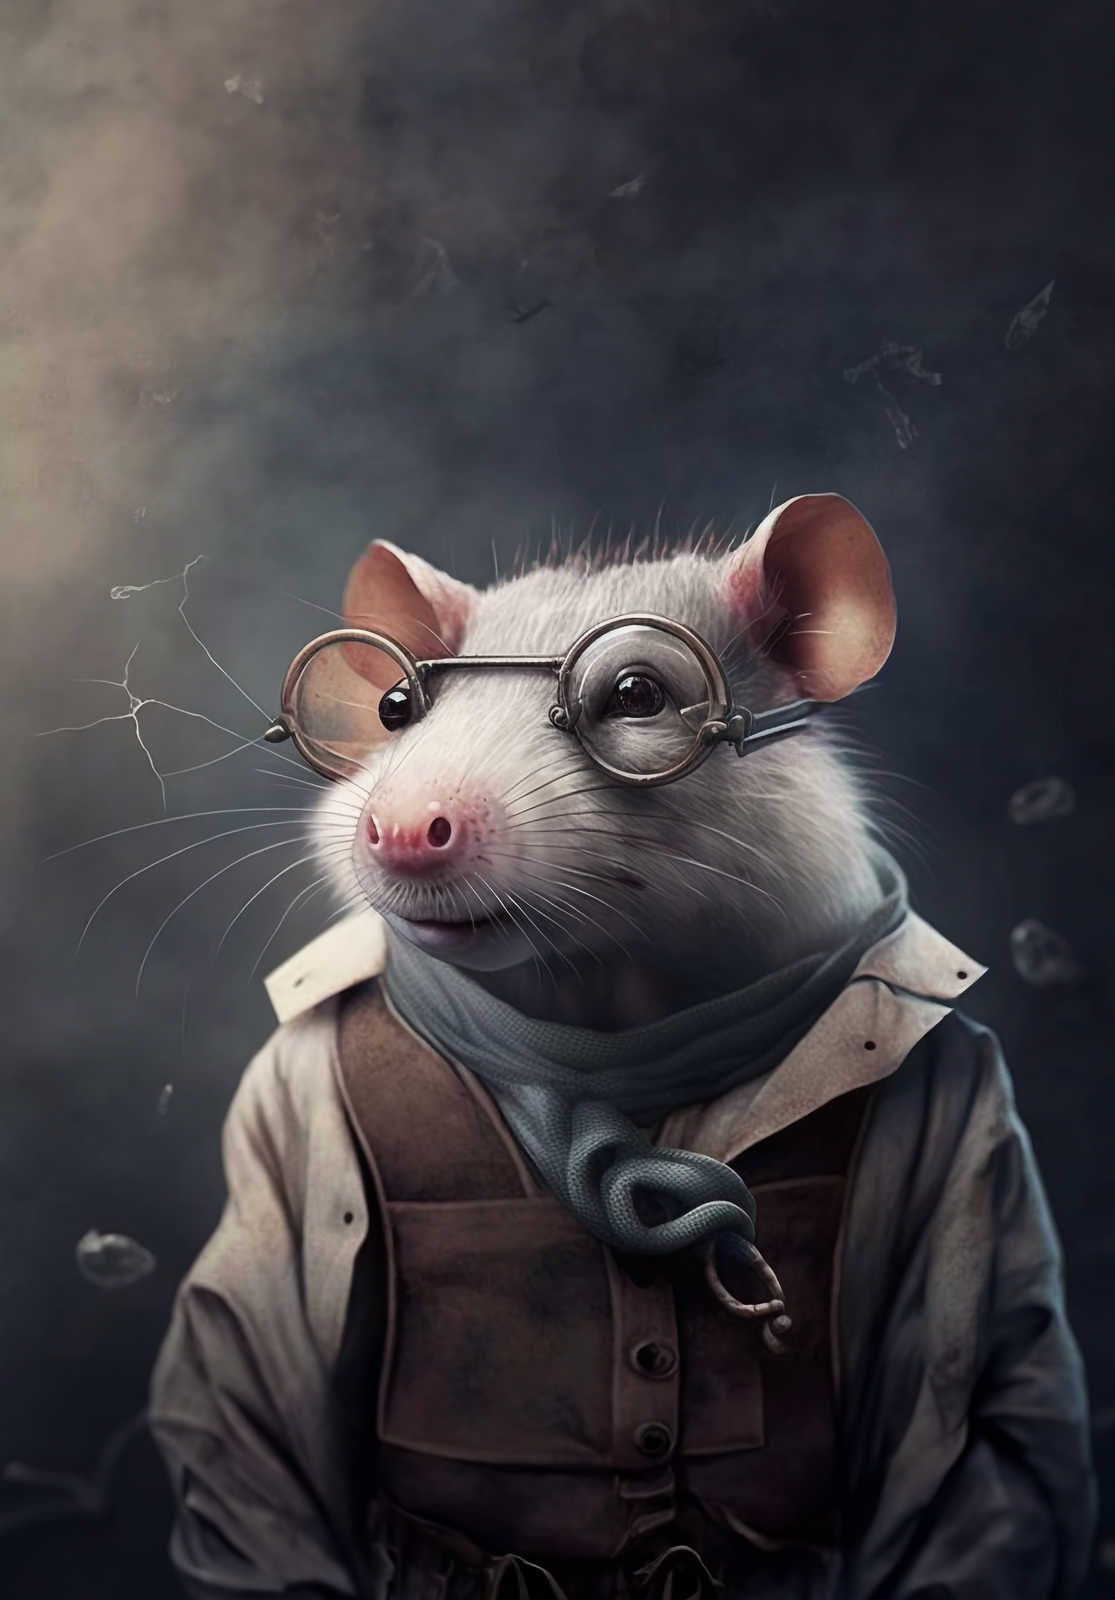             KI canvas picture »scientific rat« - 80 cm x 120 cm
        